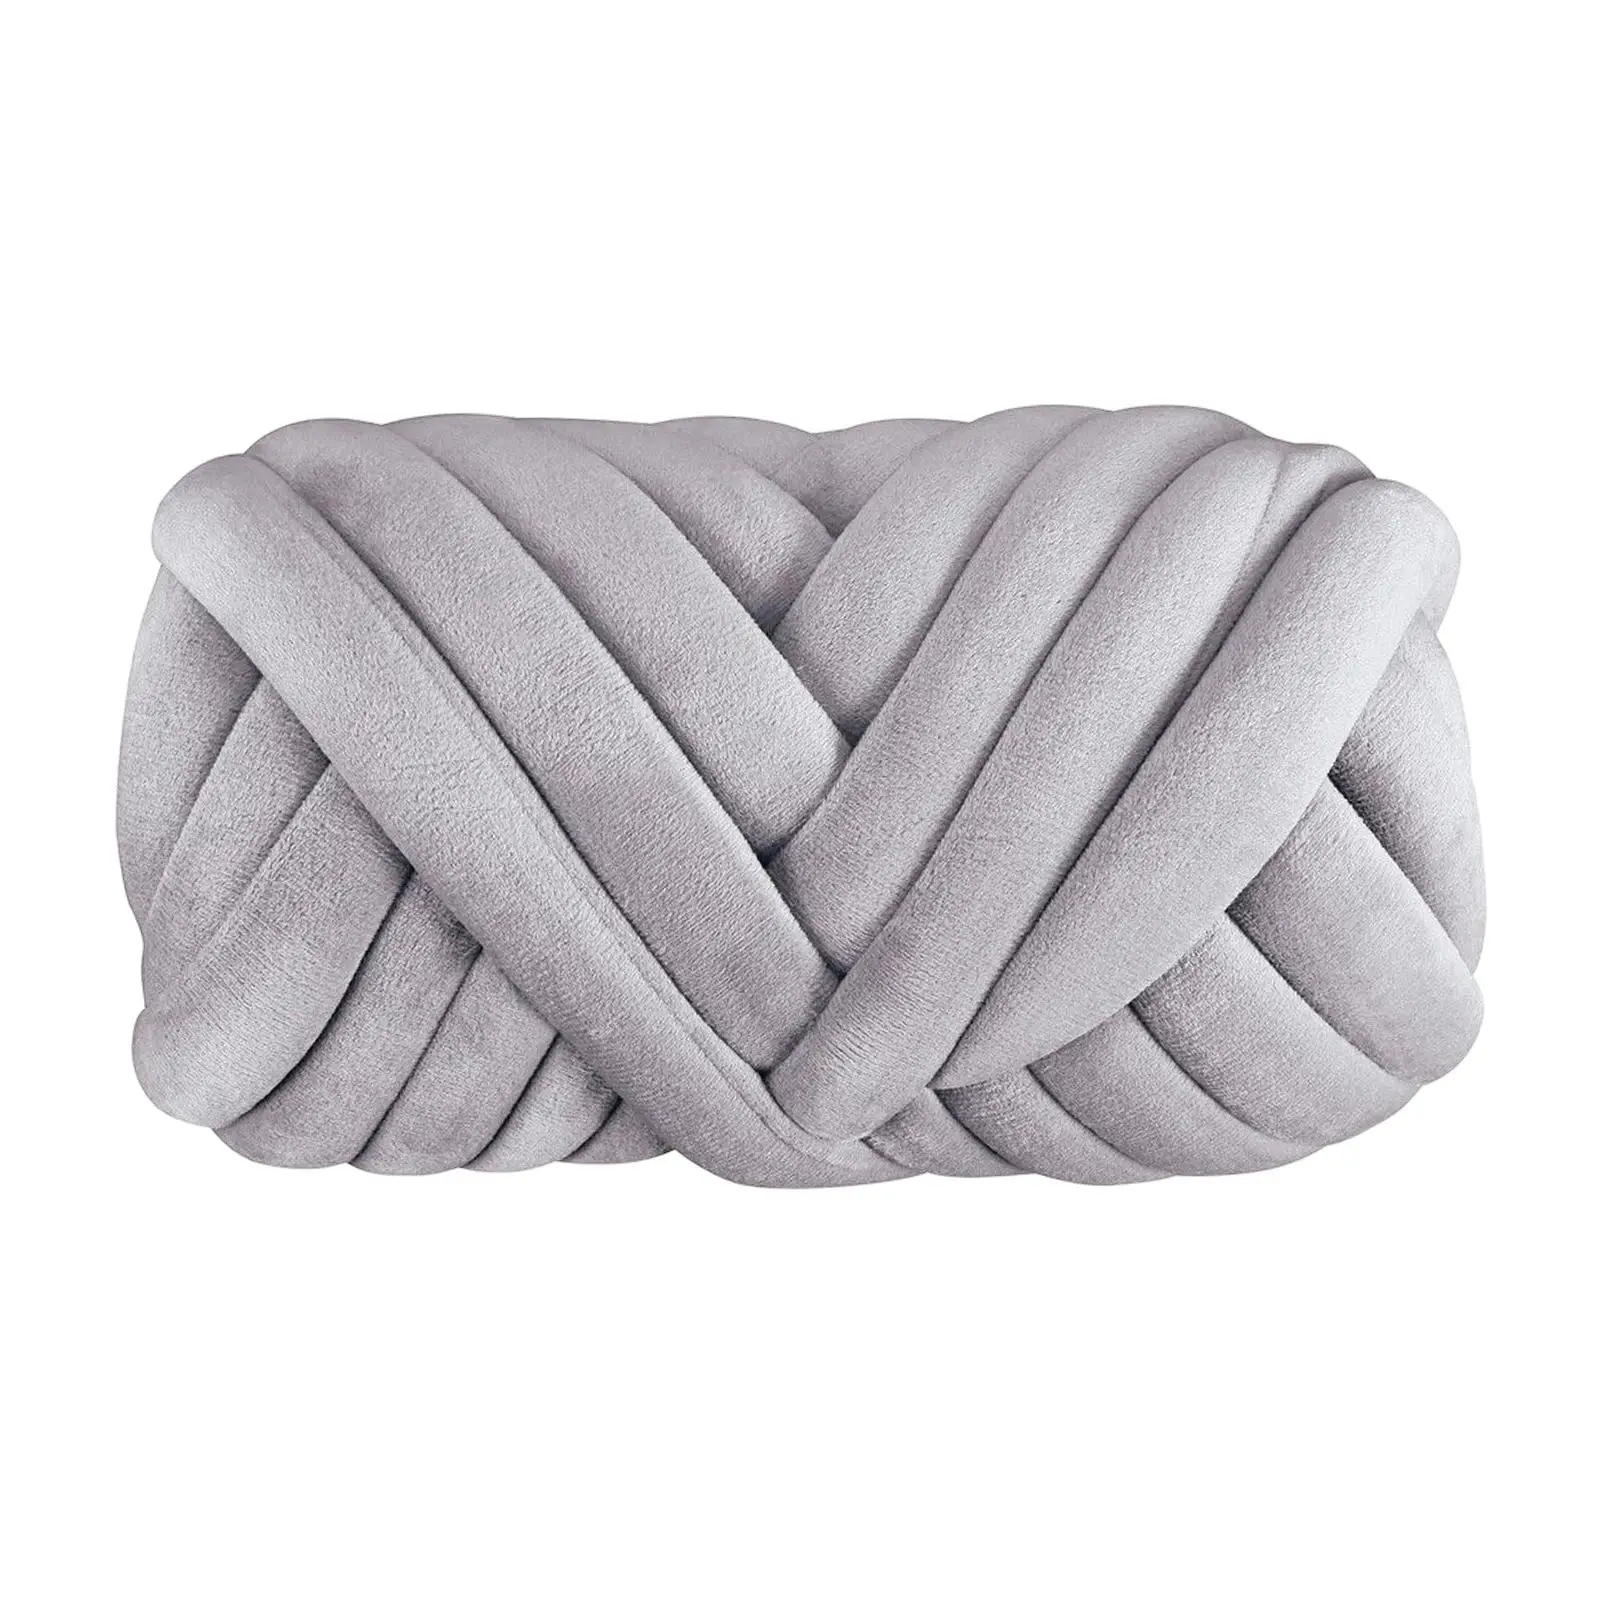 Cotton Polyester Chunky Yarn Arm Knitting Yarn Knitting Jumbo Tubular Yarn Bulky Yarn for Pillow Crochet Weaving Cushion Pet Bed